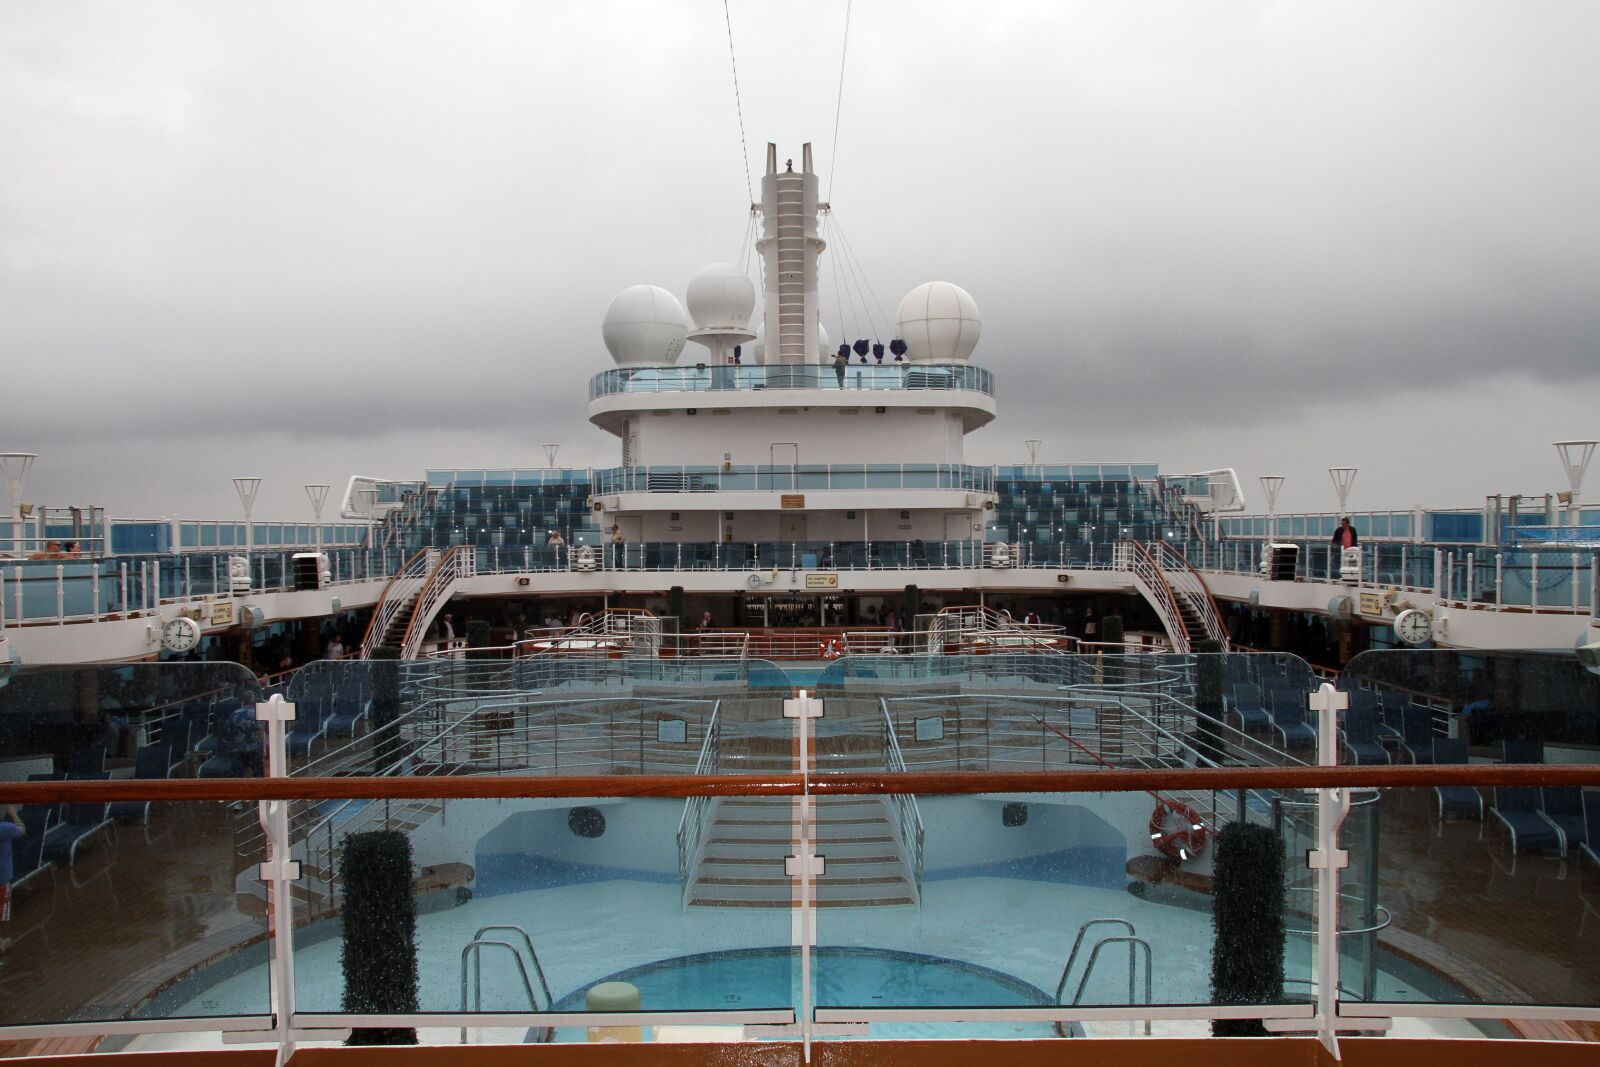 Canon EOS 7D sample photo. Cruise, ship, tourist photography